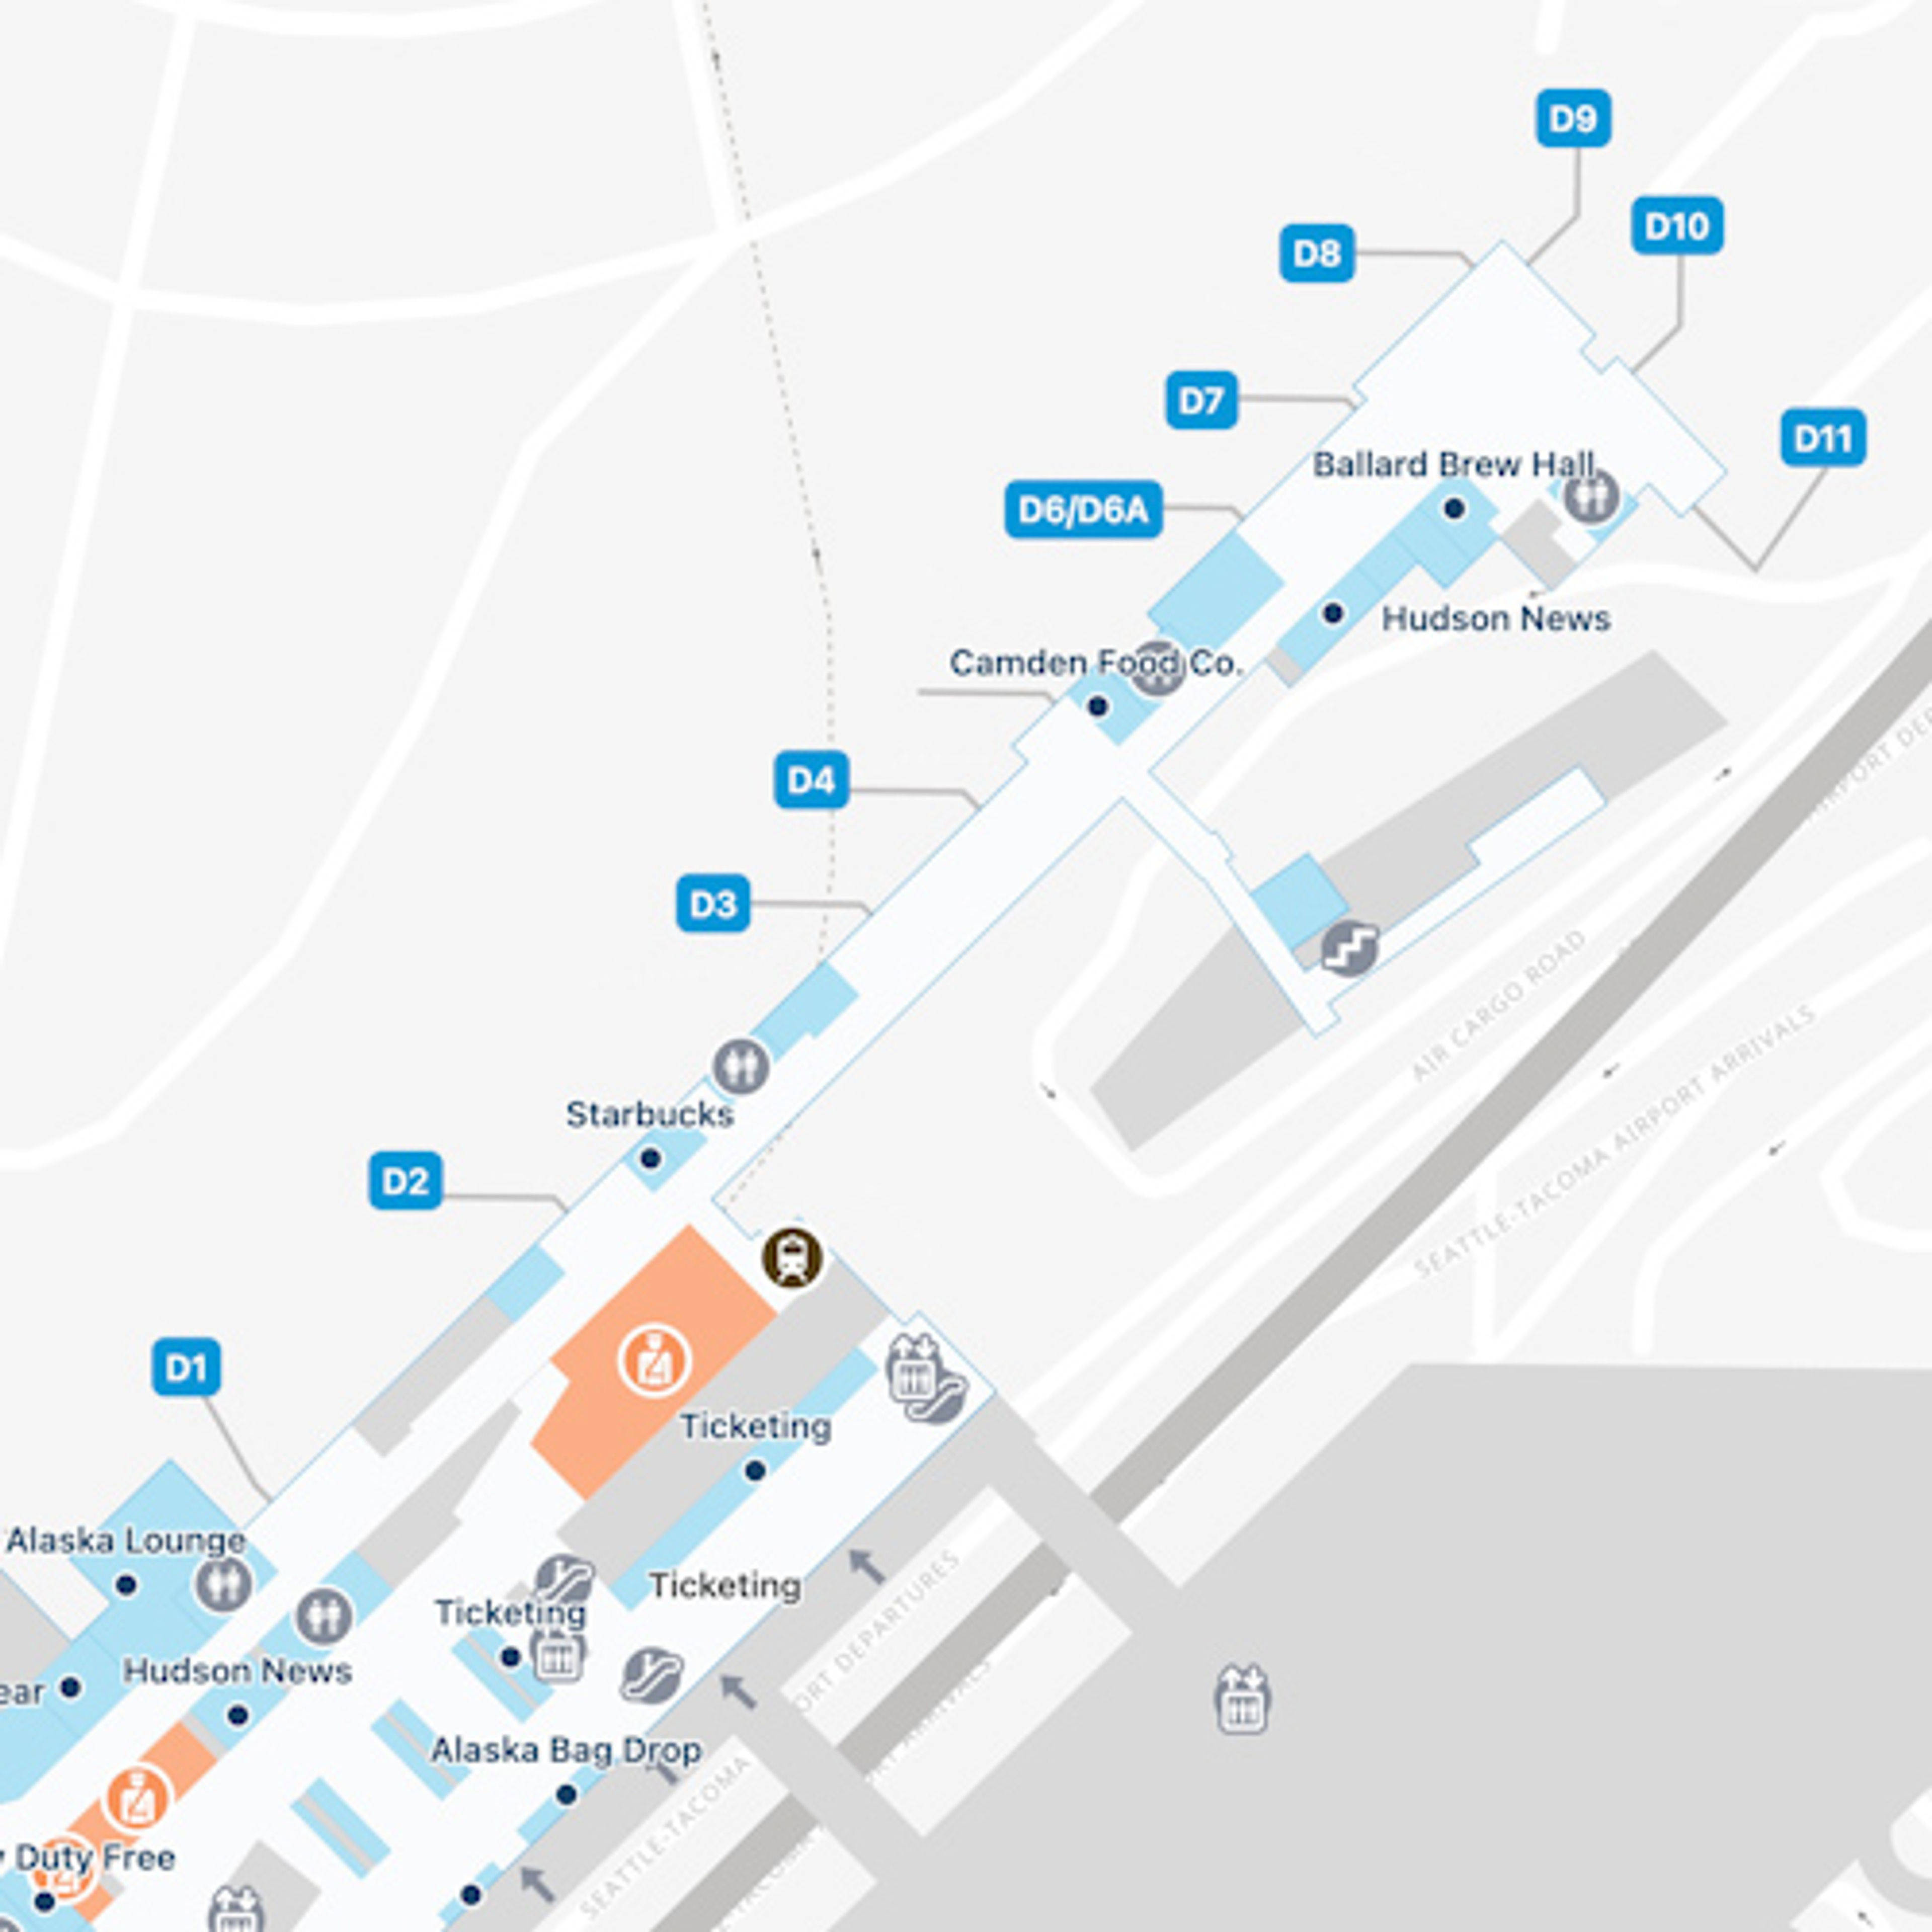 SEA Concourse D Map